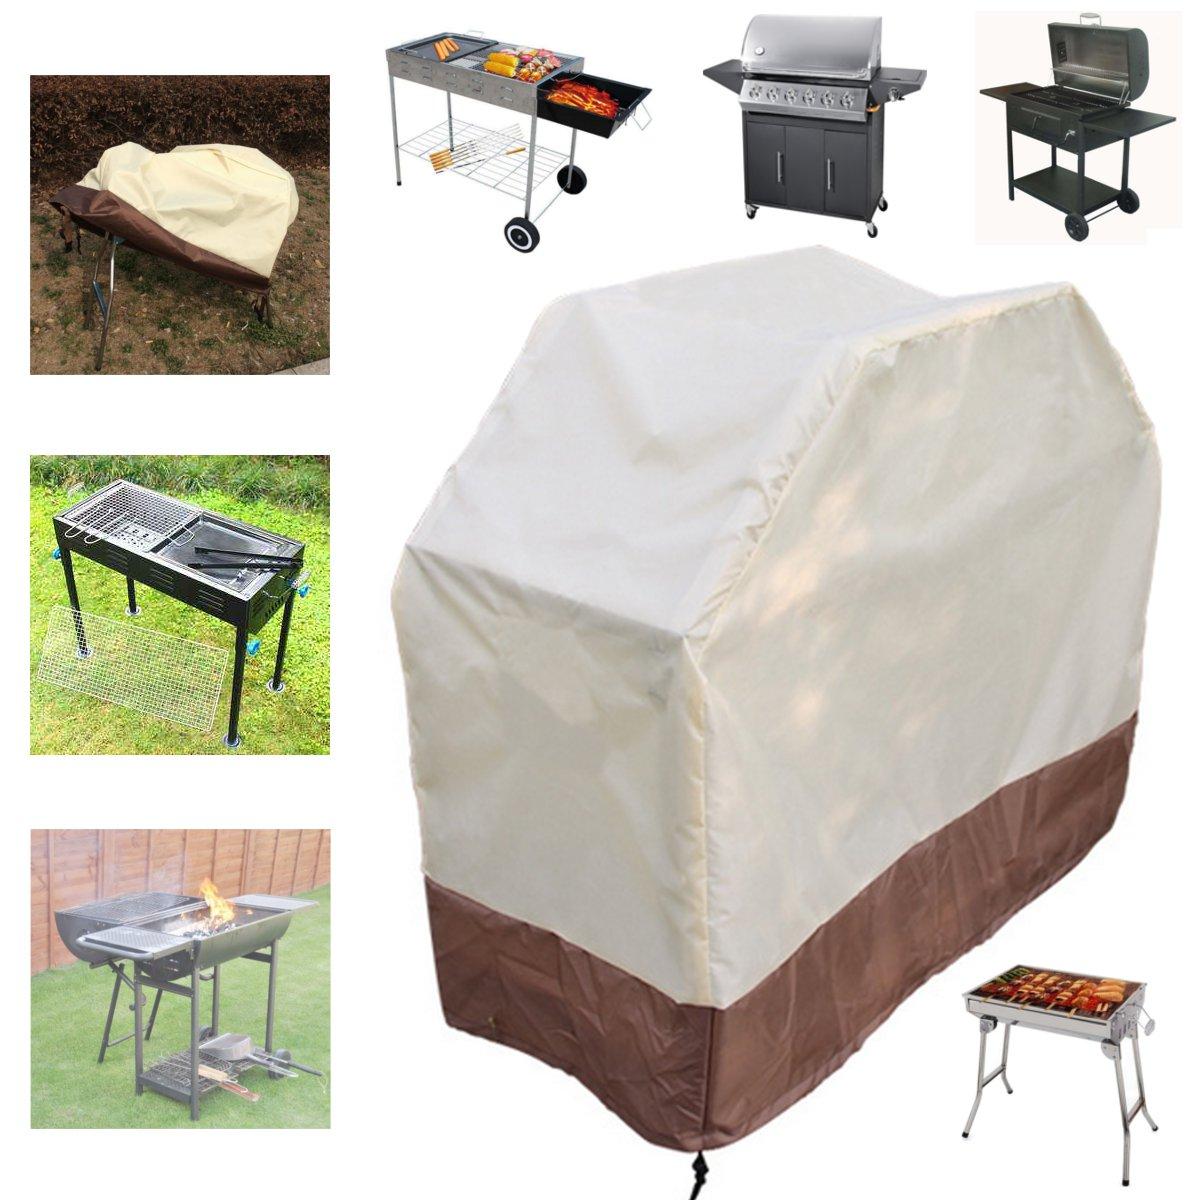 180x56x110cm BBQ Grill Gas Barbecue Wasserdichte Abdeckungen Garten Outdoor Kochen Regenschutz